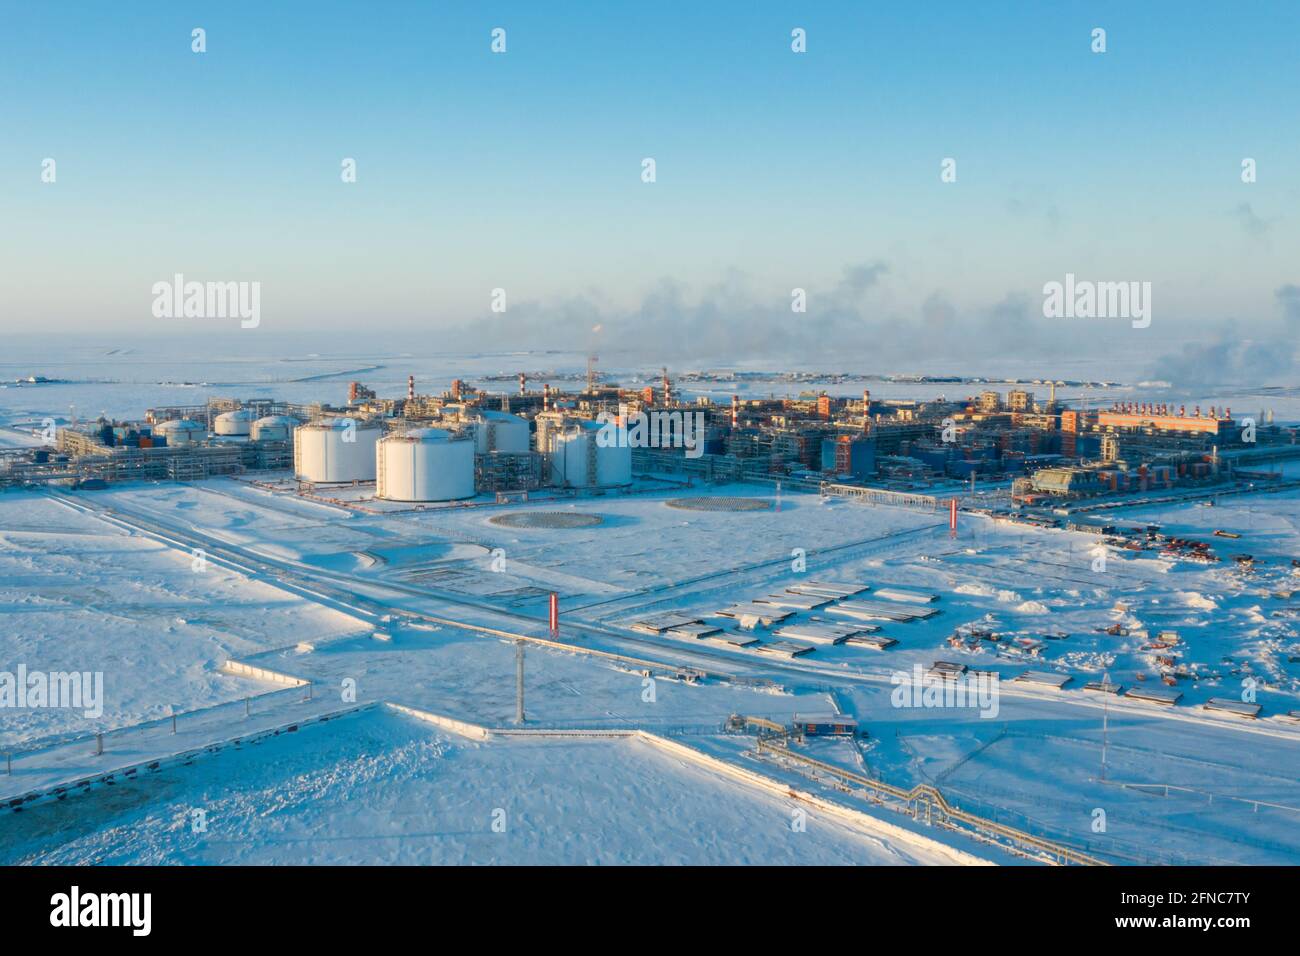 Sabetta, regione del Tyumen, Russia - 31 marzo 2021: Impianto di lavorazione del gas naturale in Russia. Una pianta nell'estremo nord. Foto Stock